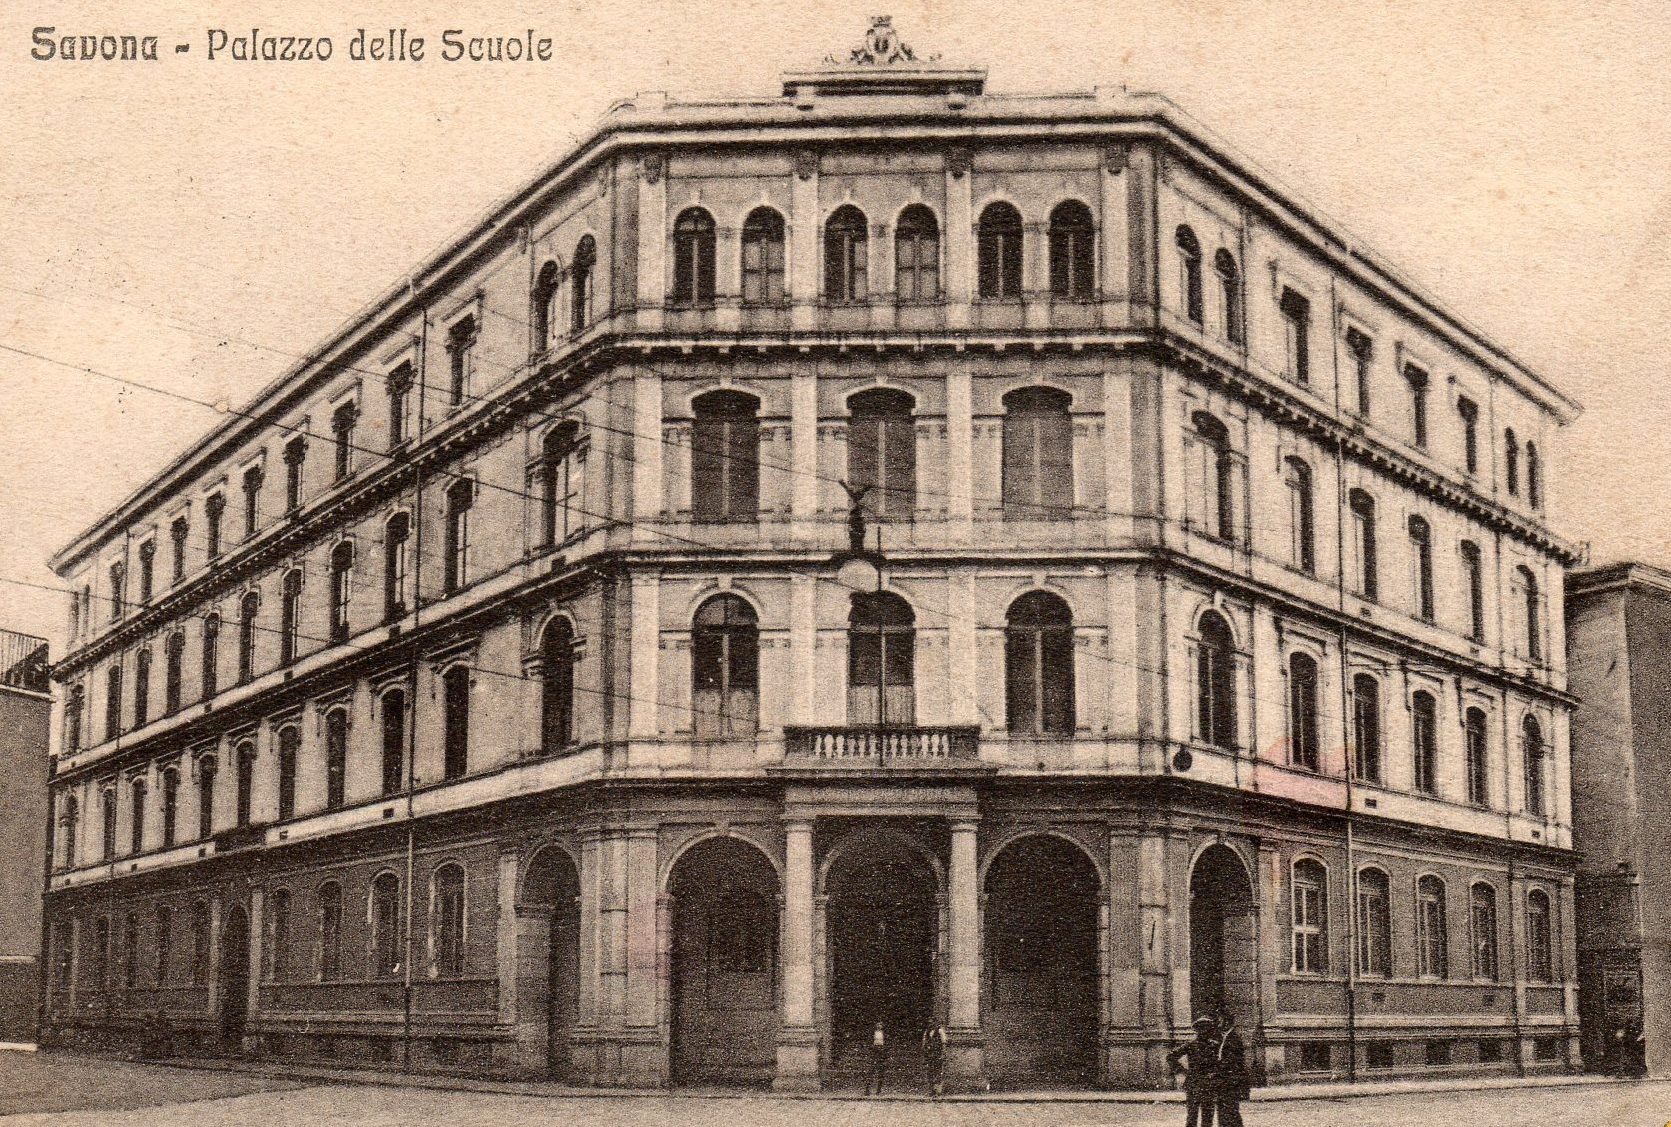 Il Regio Ginnasio "Gabriello Chiabrera" di Savona in una cartolina d'epoca.